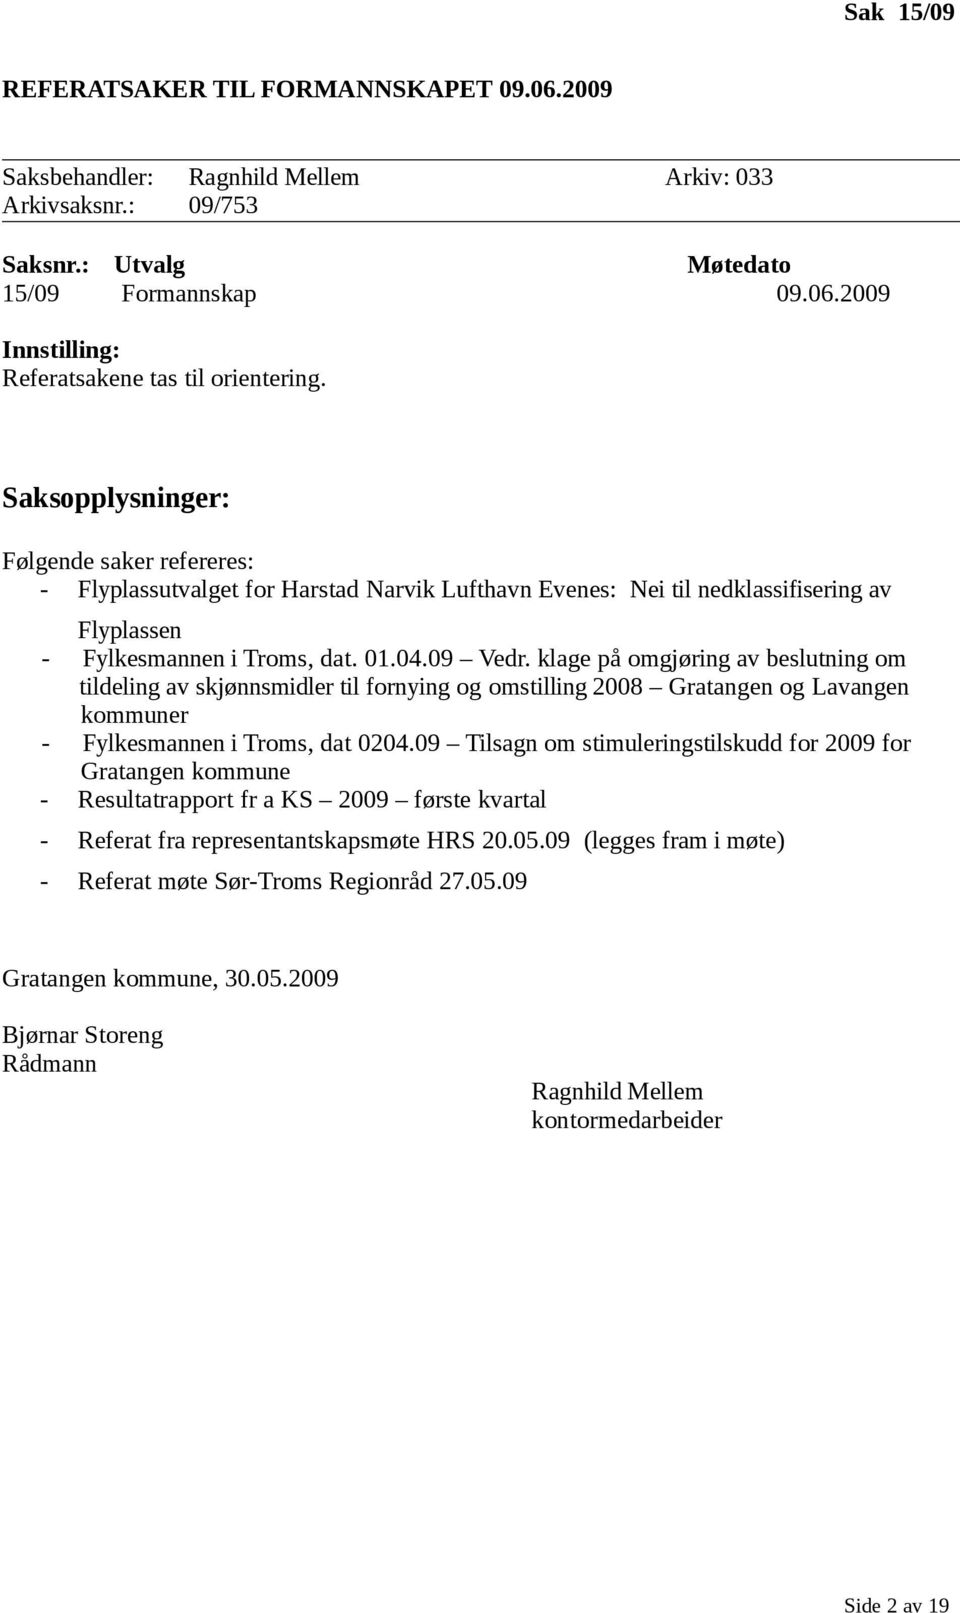 klage på omgjøring av beslutning om tildeling av skjønnsmidler til fornying og omstilling 2008 Gratangen og Lavangen kommuner - Fylkesmannen i Troms, dat 0204.